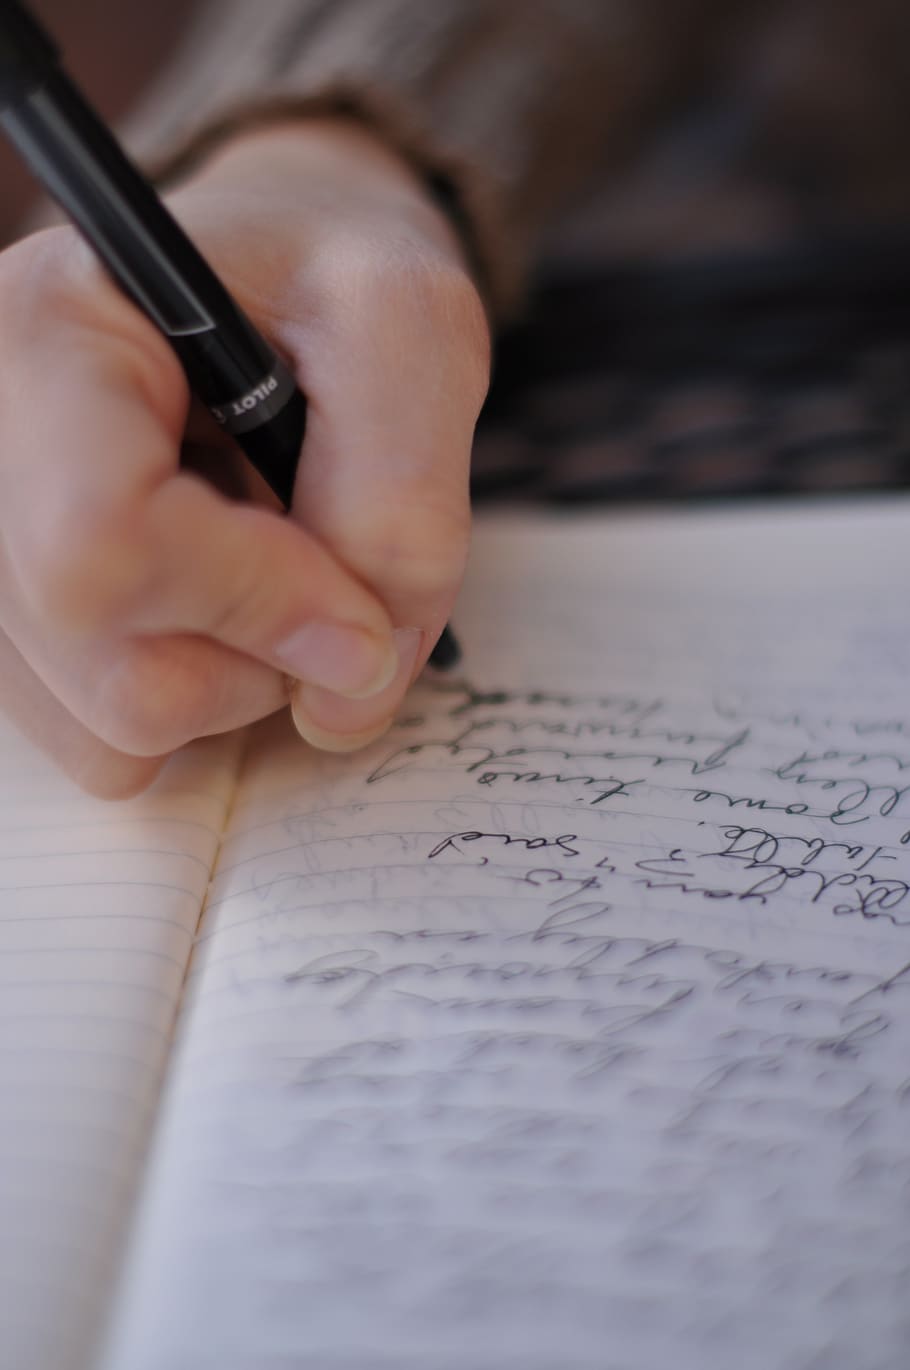 menulis, belajar, tulisan tangan, tangan manusia, tangan, satu orang, orang sungguhan, fokus selektif, kertas, memegang